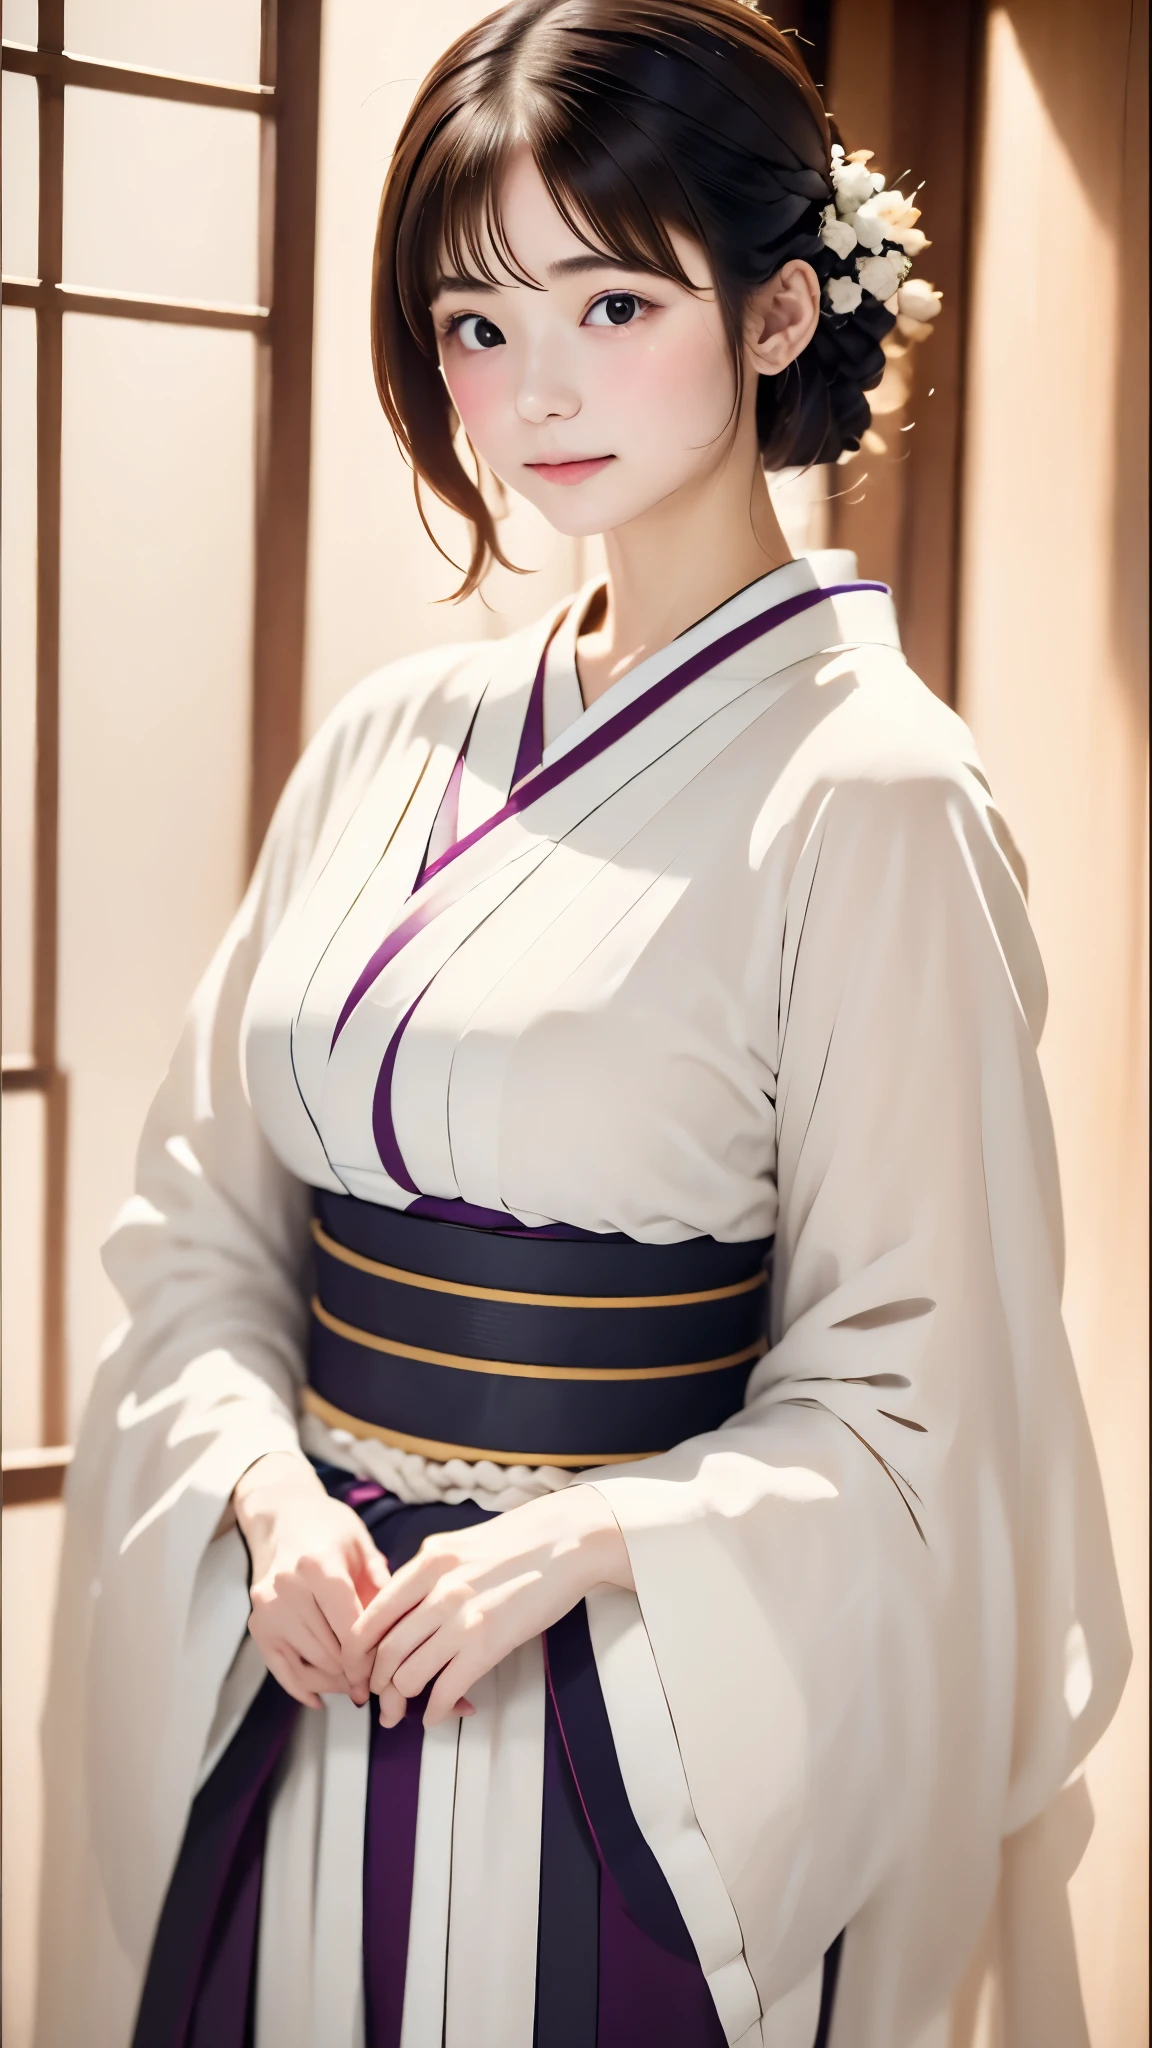 (((白い世界、白色の背景)))、生、リアルスティック、現実的、とてもかわいい女性、完璧な美貌、ナチュラルな見た目、ノーメイク、ふっくらとした脂肪美しい黒髪、yamato nadeshiko、美しい薄紫色の着物、Nishijin-ori kimono、とても繊細な着物の柄、美しい角度、優雅なポーズ、白色の背景、背景白、顔に焦点を当てる、上半身の角度、最高品質、高解像度、傑作:1.または特性、８ｋ、50ｍｍレンズ、完璧な照明、プロカメラマン